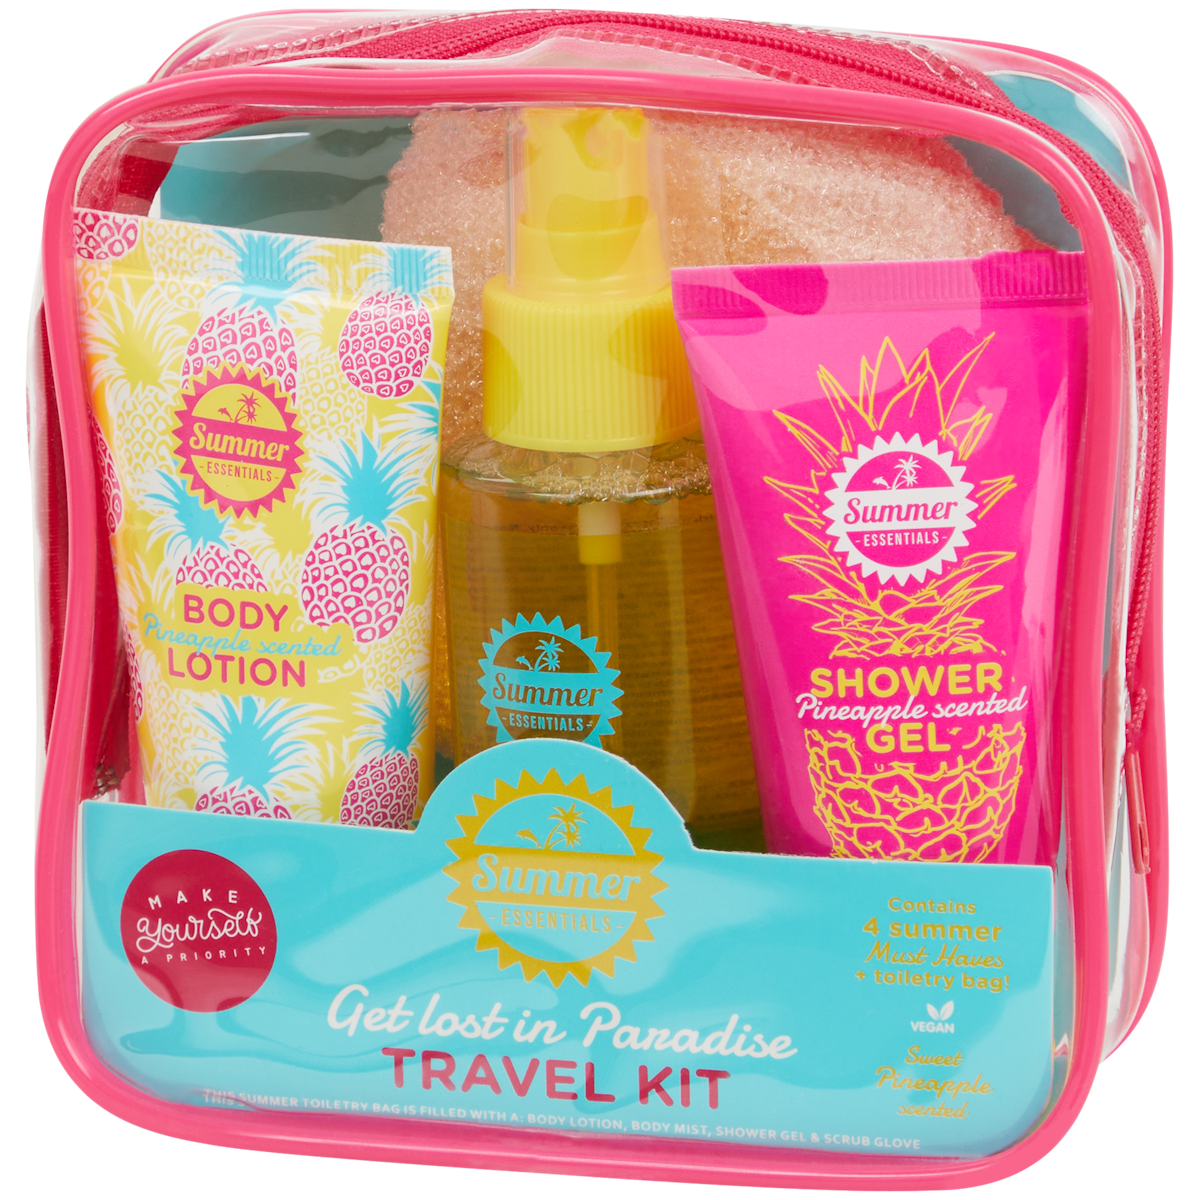 Beauty travel kit